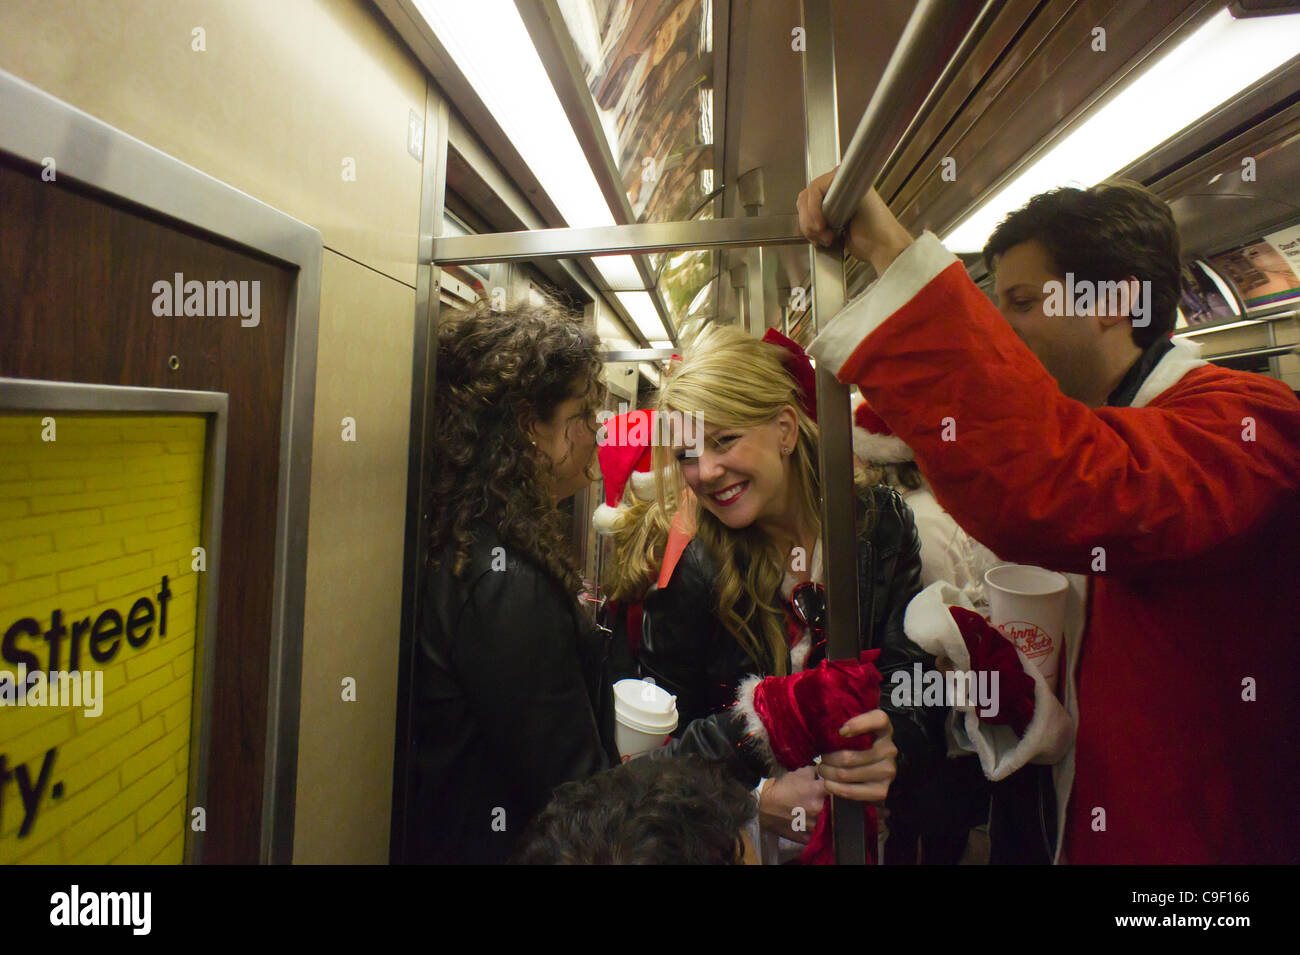 Weihnachten Nachtschwärmer Teilnahme an der jährlichen Santacon fahren mit der u-Bahn in New York auf Samstag, 10. Dezember 2011. Santacon, in erster Linie eine Kneipentour in Santa und andere Weihnachten im Zusammenhang mit Kostümen, zieht Hunderte von Masken gehen von Bar zu Bar. Der Trinker wurden ermutigt, trinken bei e Stockfoto